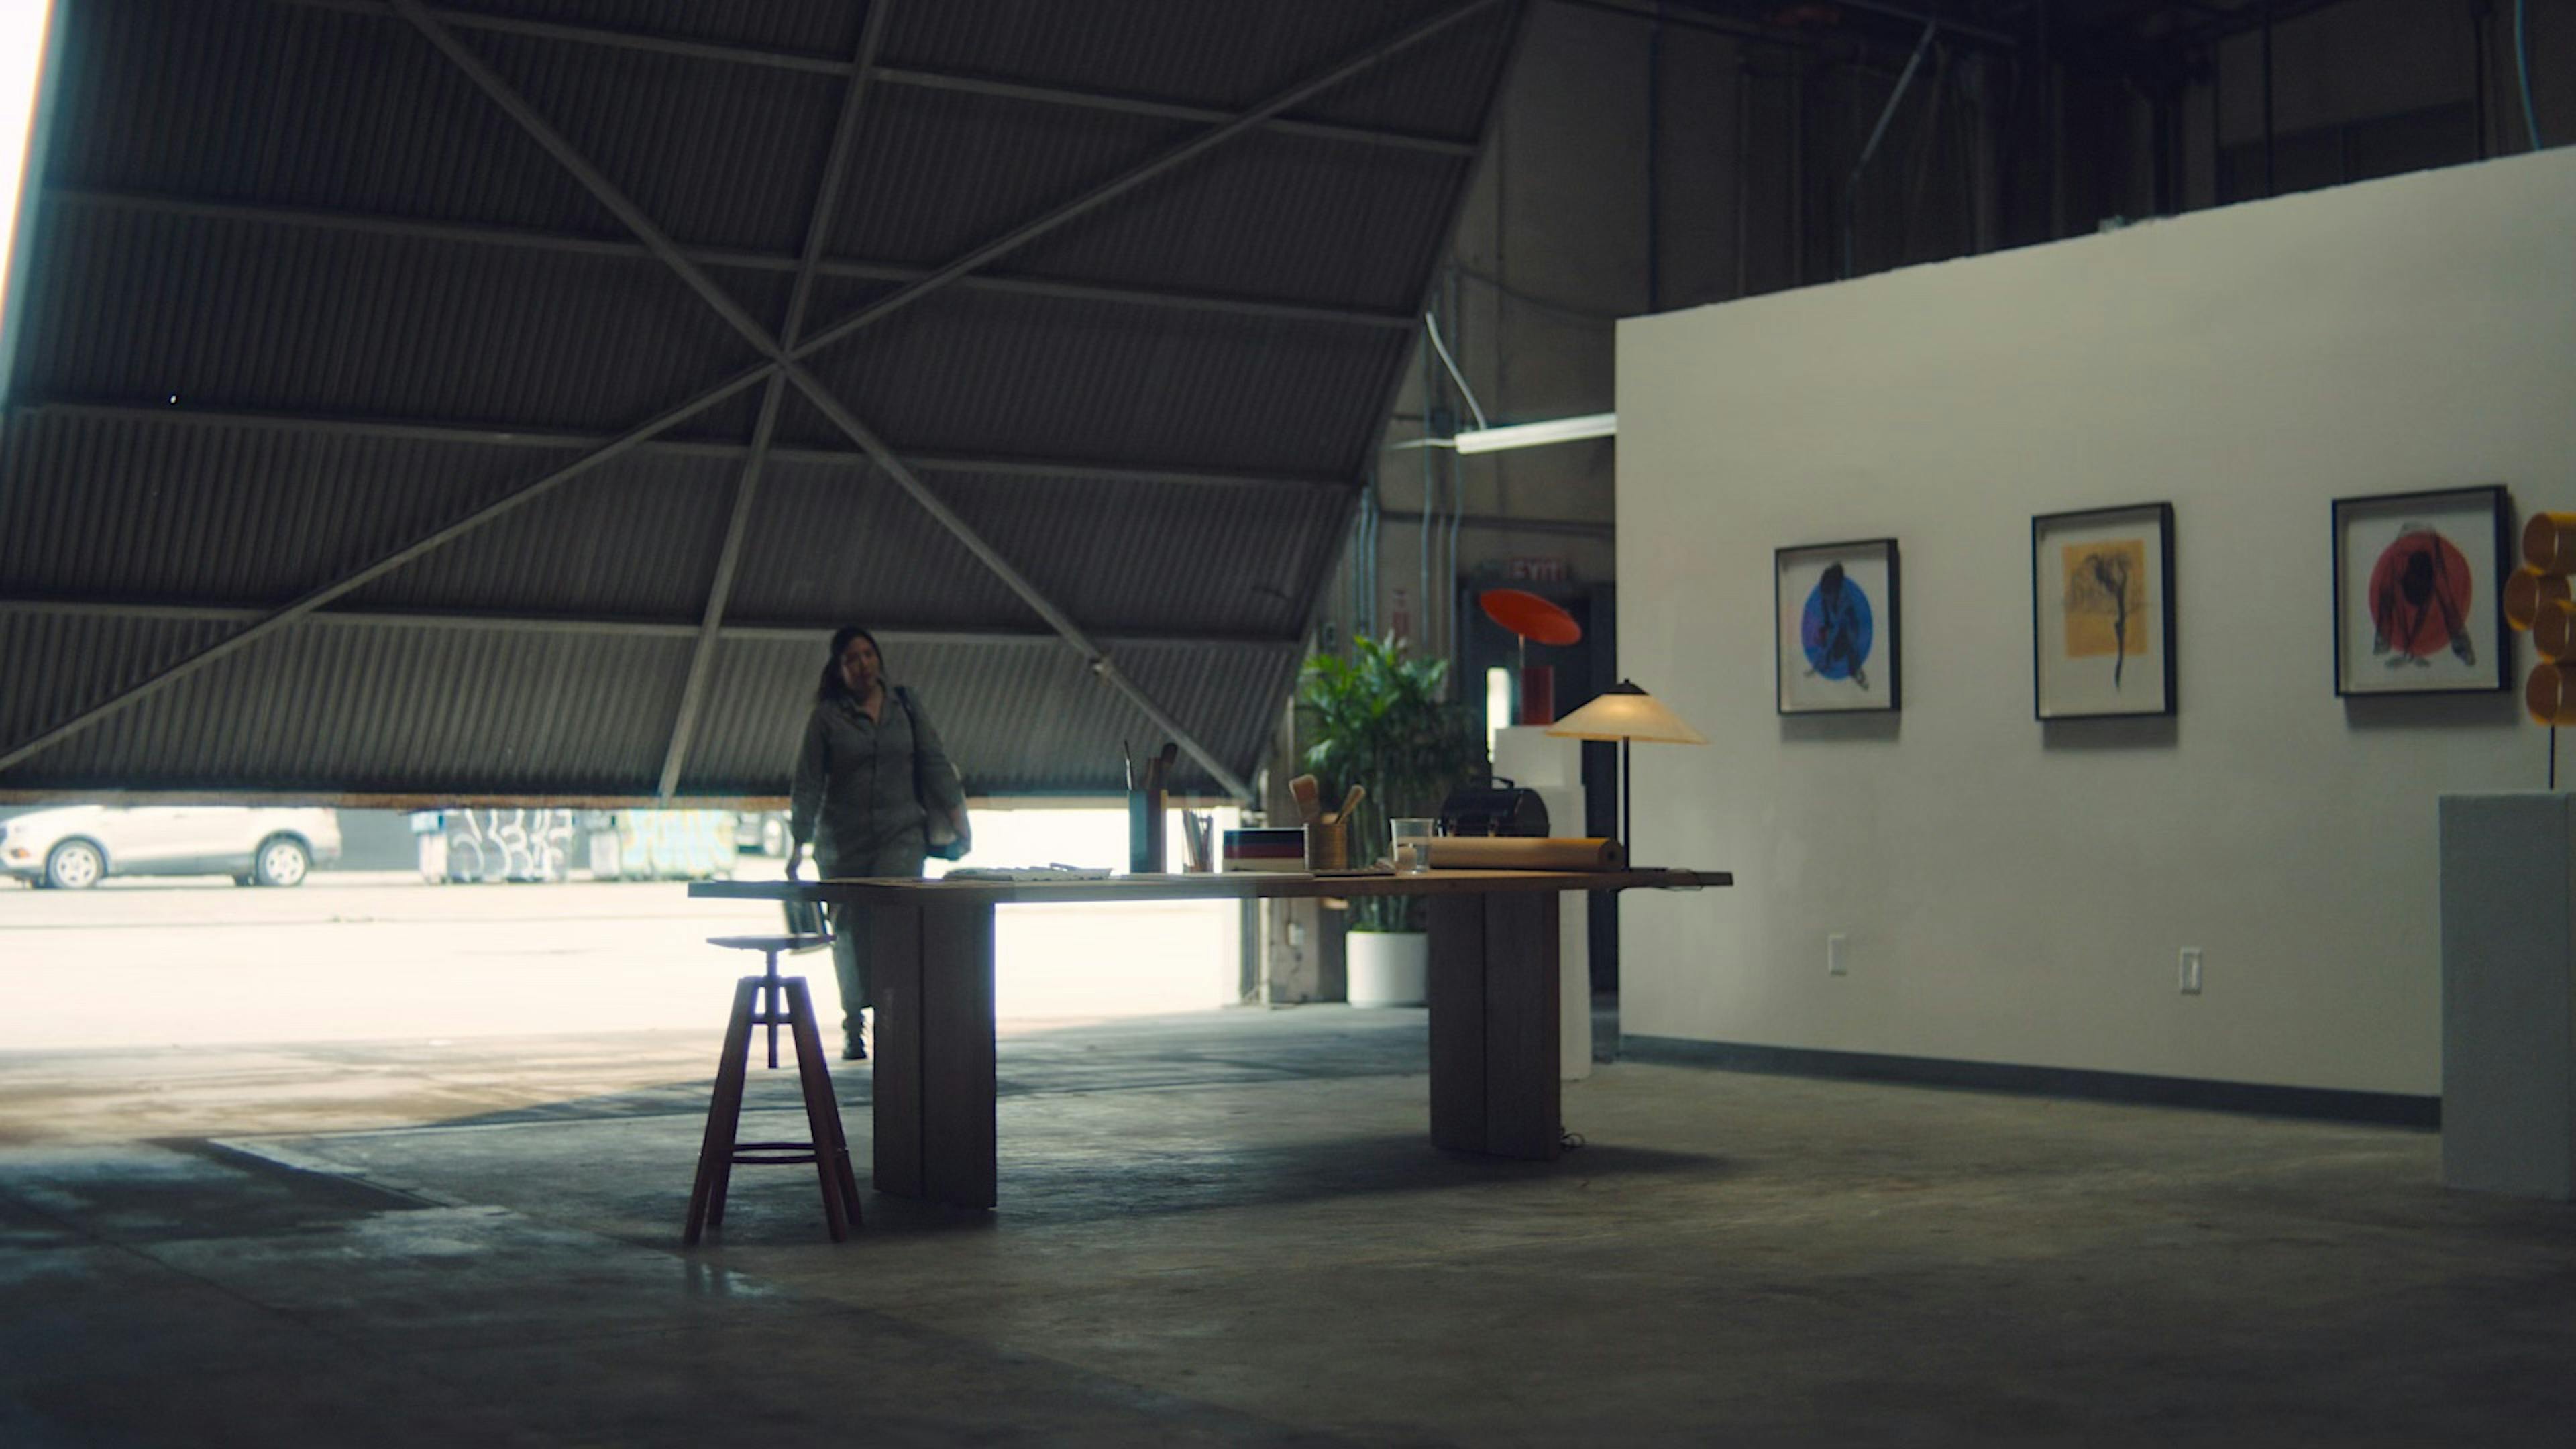 Artist walks into a garage/gallery space